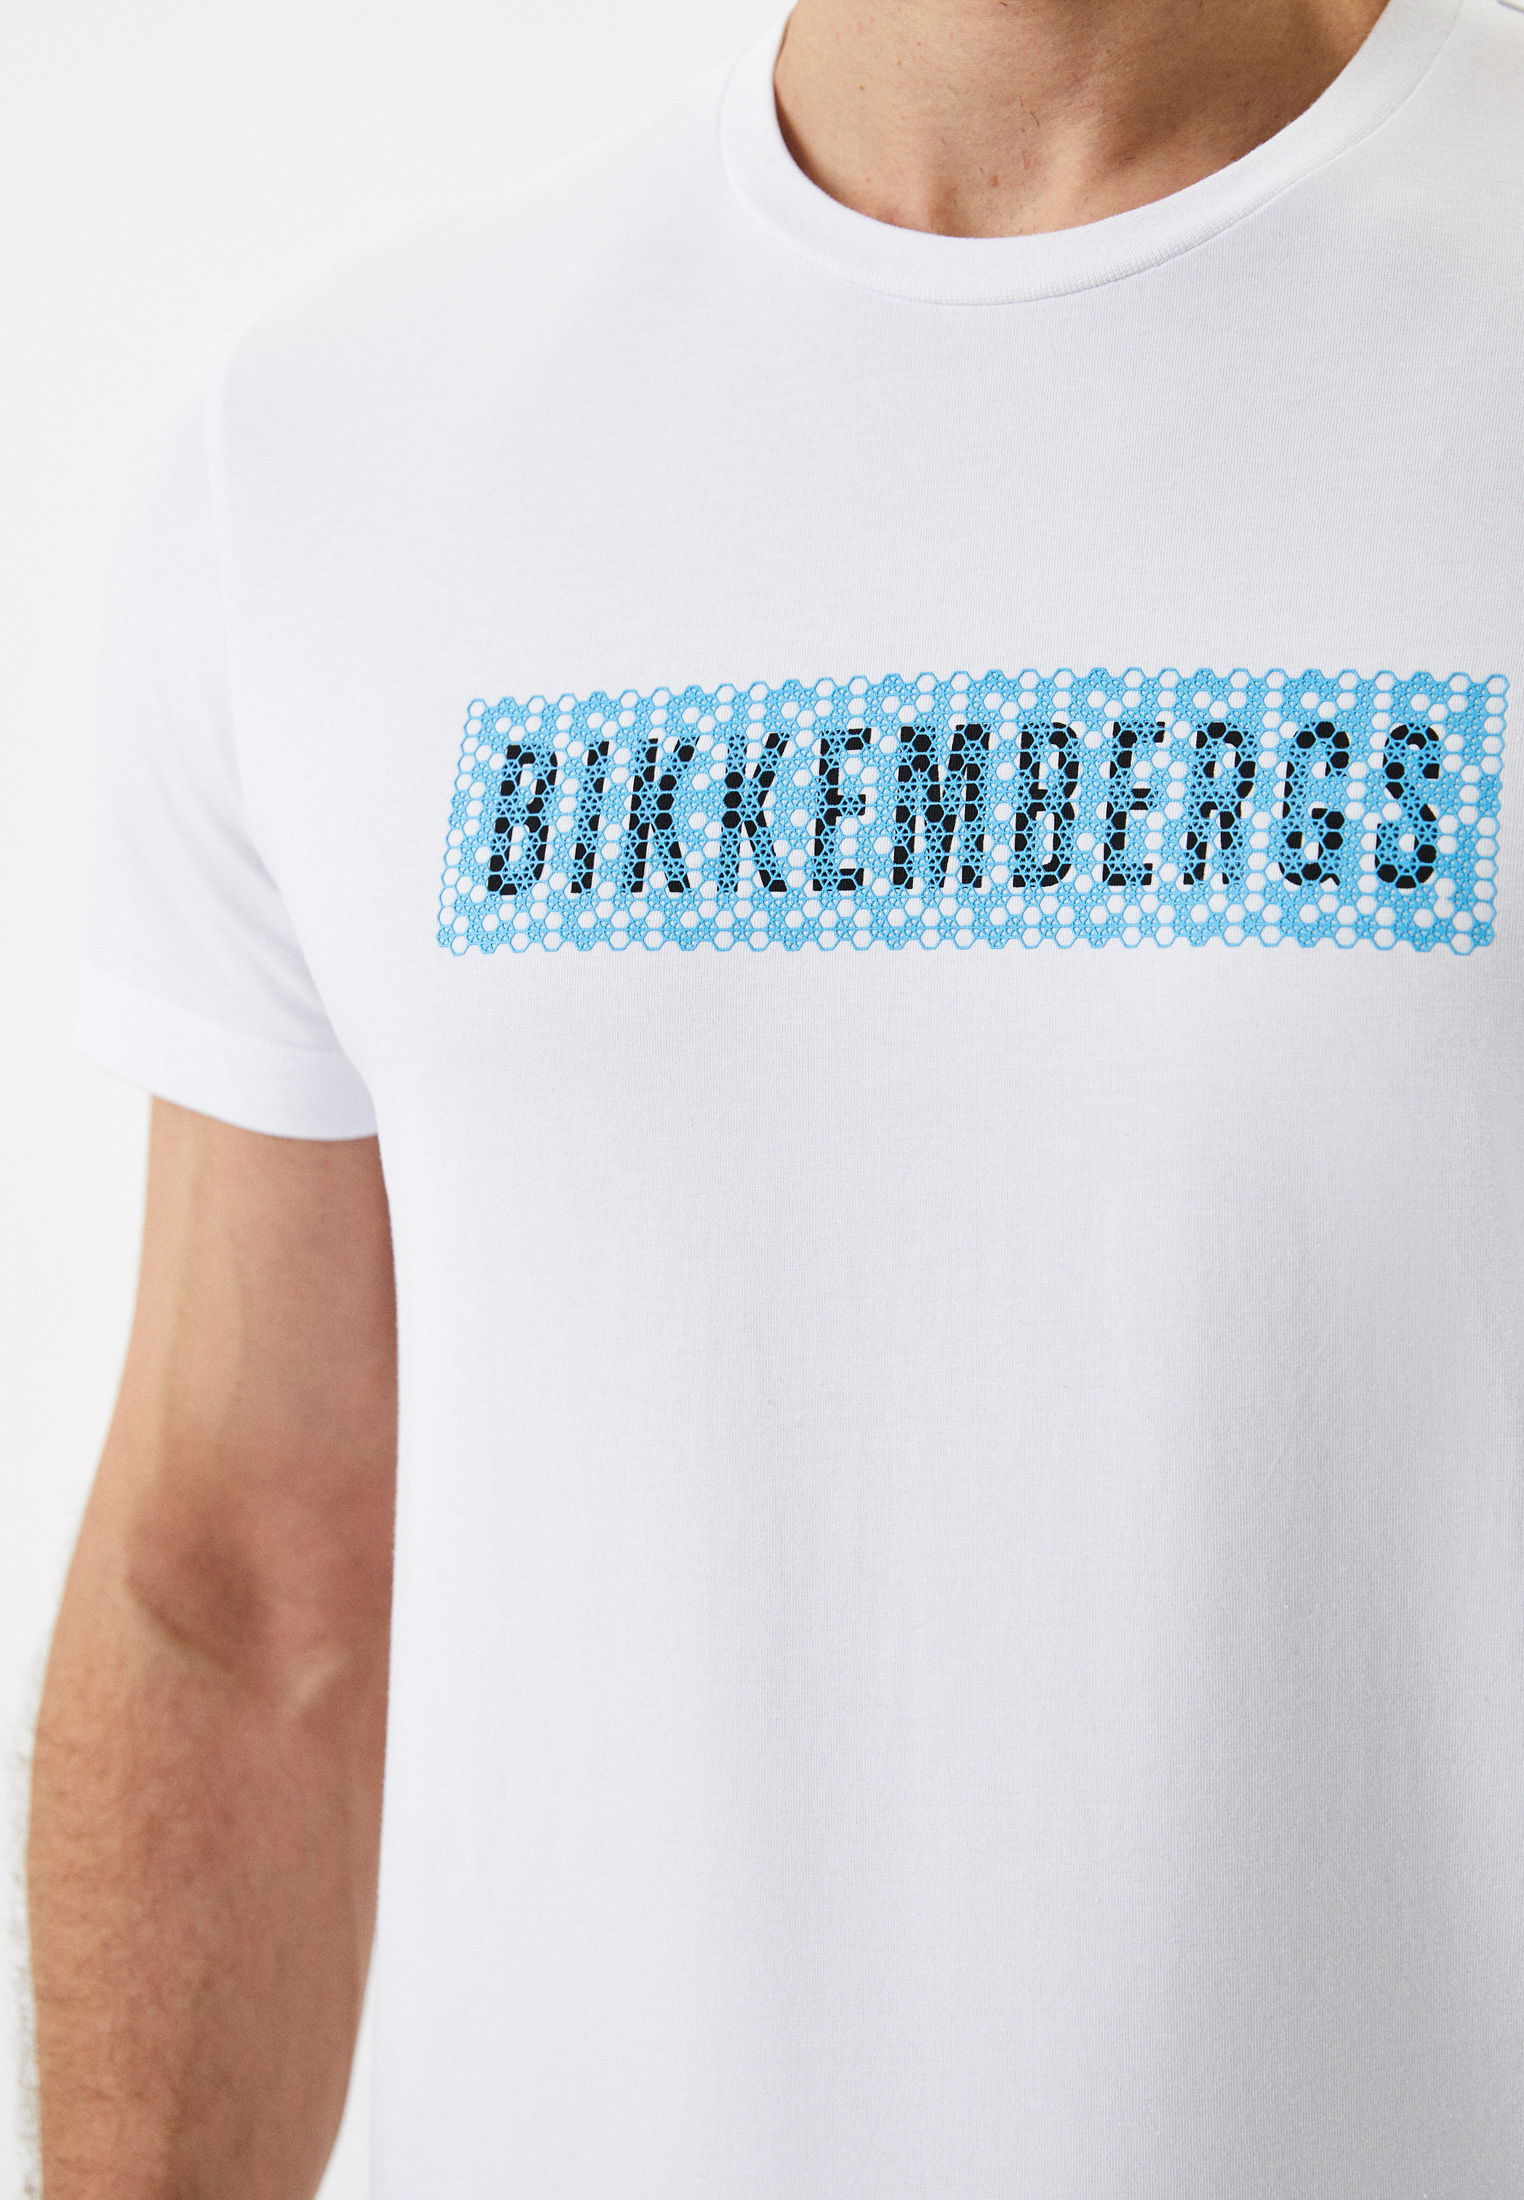 Мужская футболка Bikkembergs (Биккембергс) C 4 101 04 E 2231: изображение 9